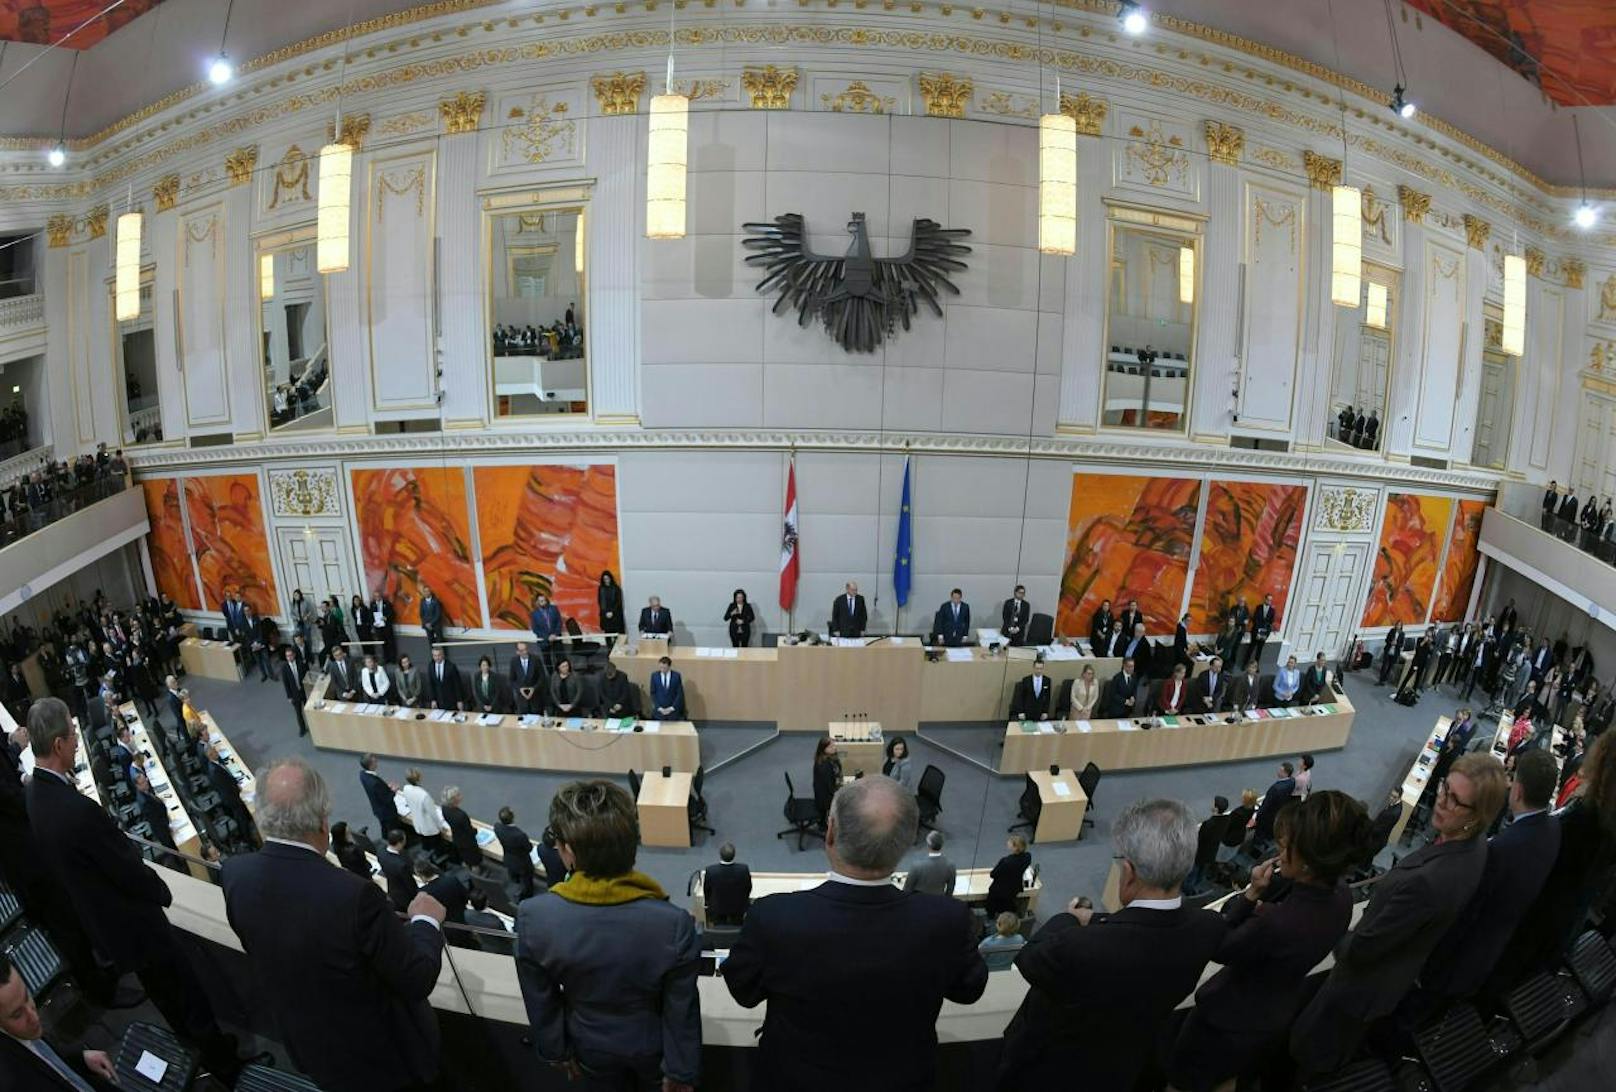 Eine Übersichtsaufnahme im Rahmen einer Sitzung des Nationalrates mit Regierungserklärung im Parlamentsausweichquartier in der Hofburg in Wien am Freitag, 10. Jänner 2020.